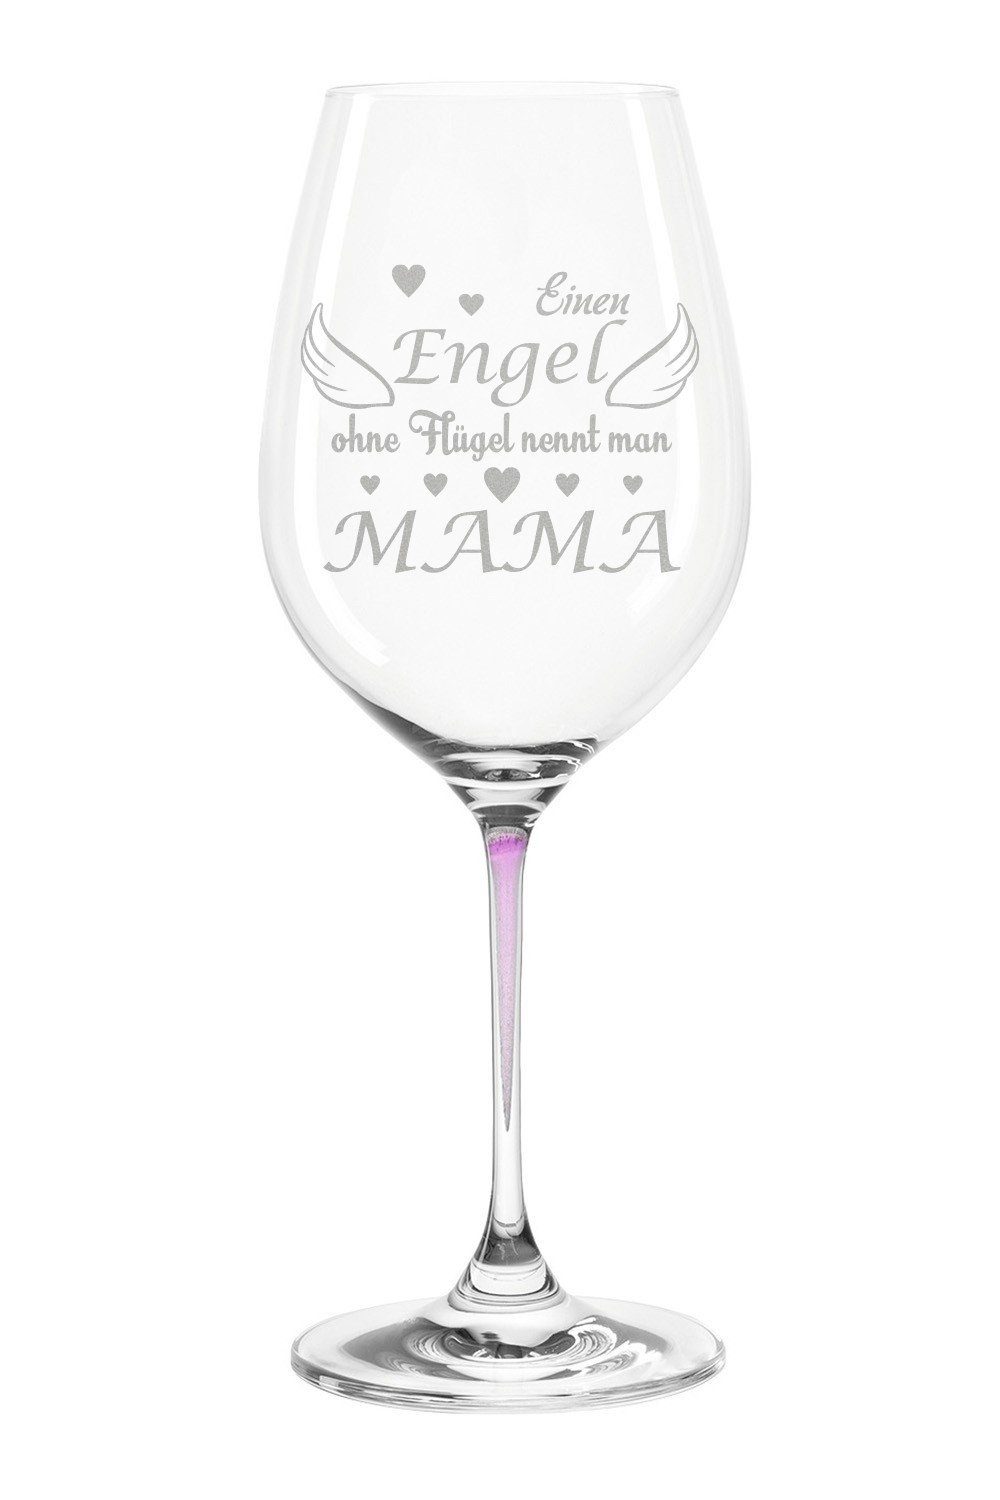 GRAVURZEILE Rotweinglas Leonardo Weißweinglas mit Gravur - Engel ohne  Flügel nennt man Mama, Glas, graviertes Geschenk für Mama zum Muttertag